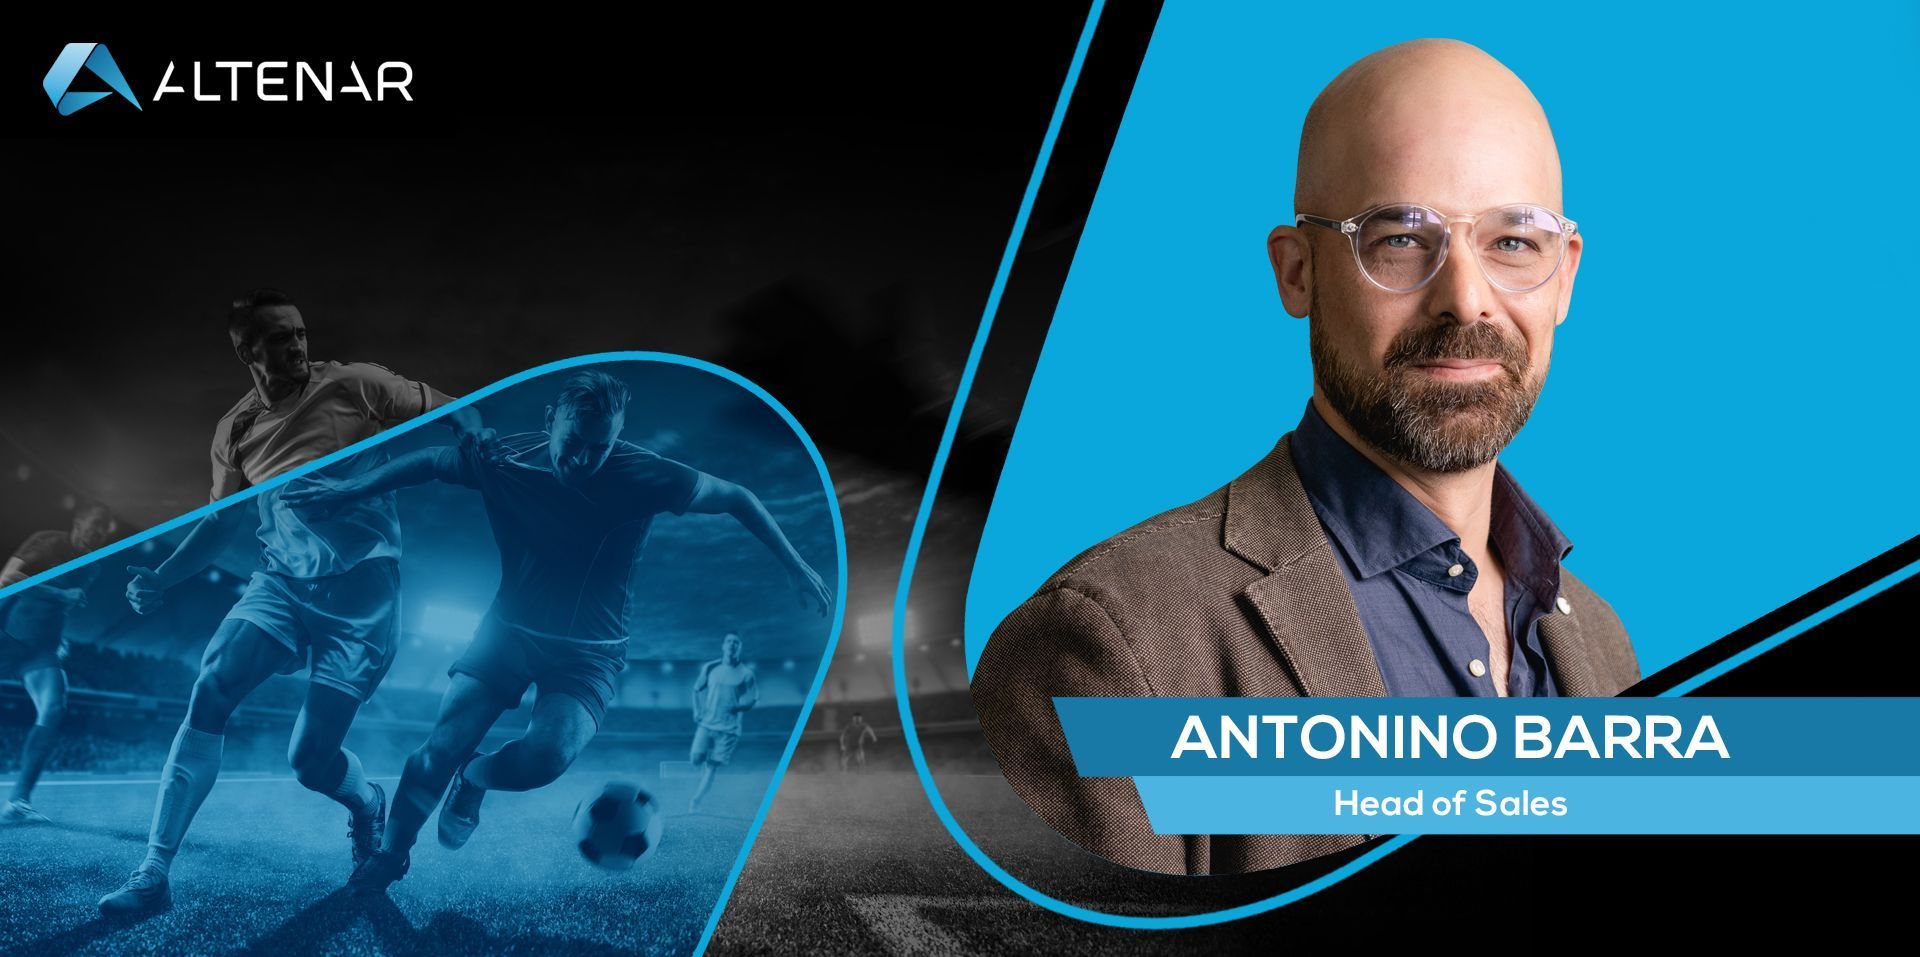 Introducing Antonino Barra: Altenar’s New Head Of Sales! 